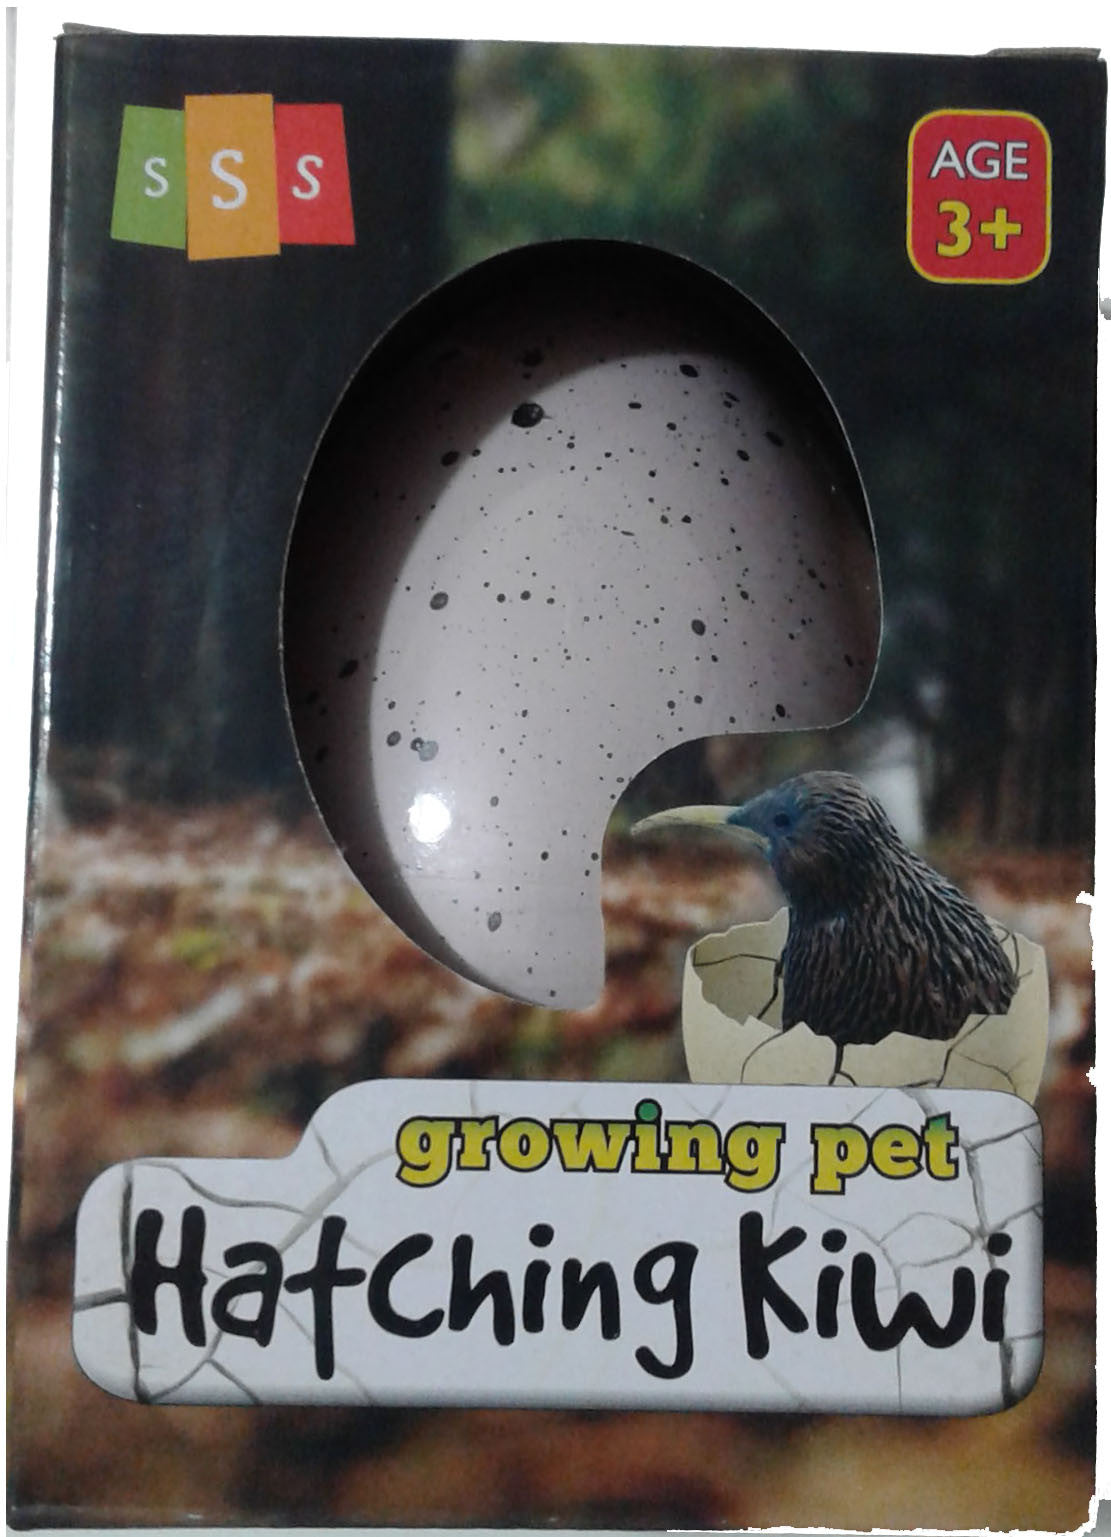 kiwi egg stroller